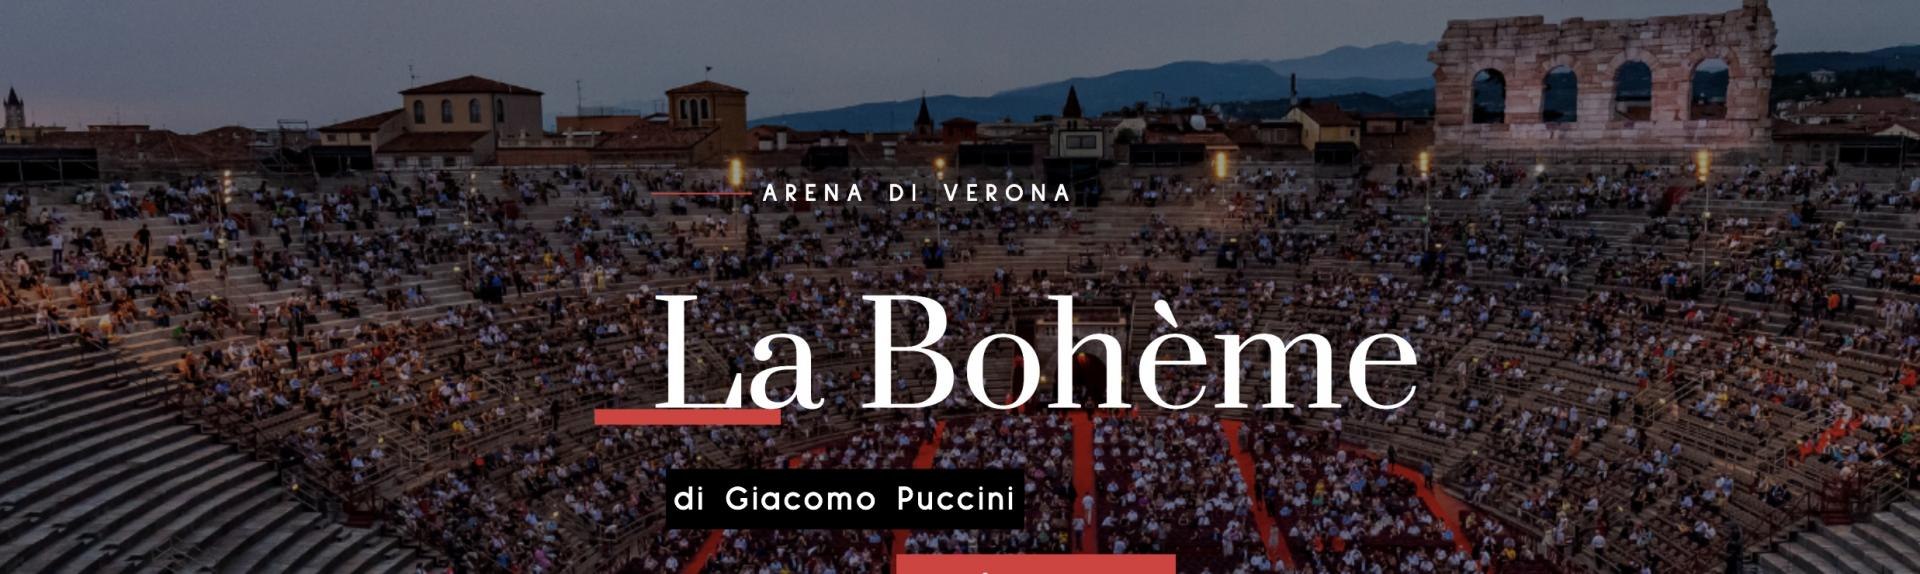 La Boheme Arena di Verona